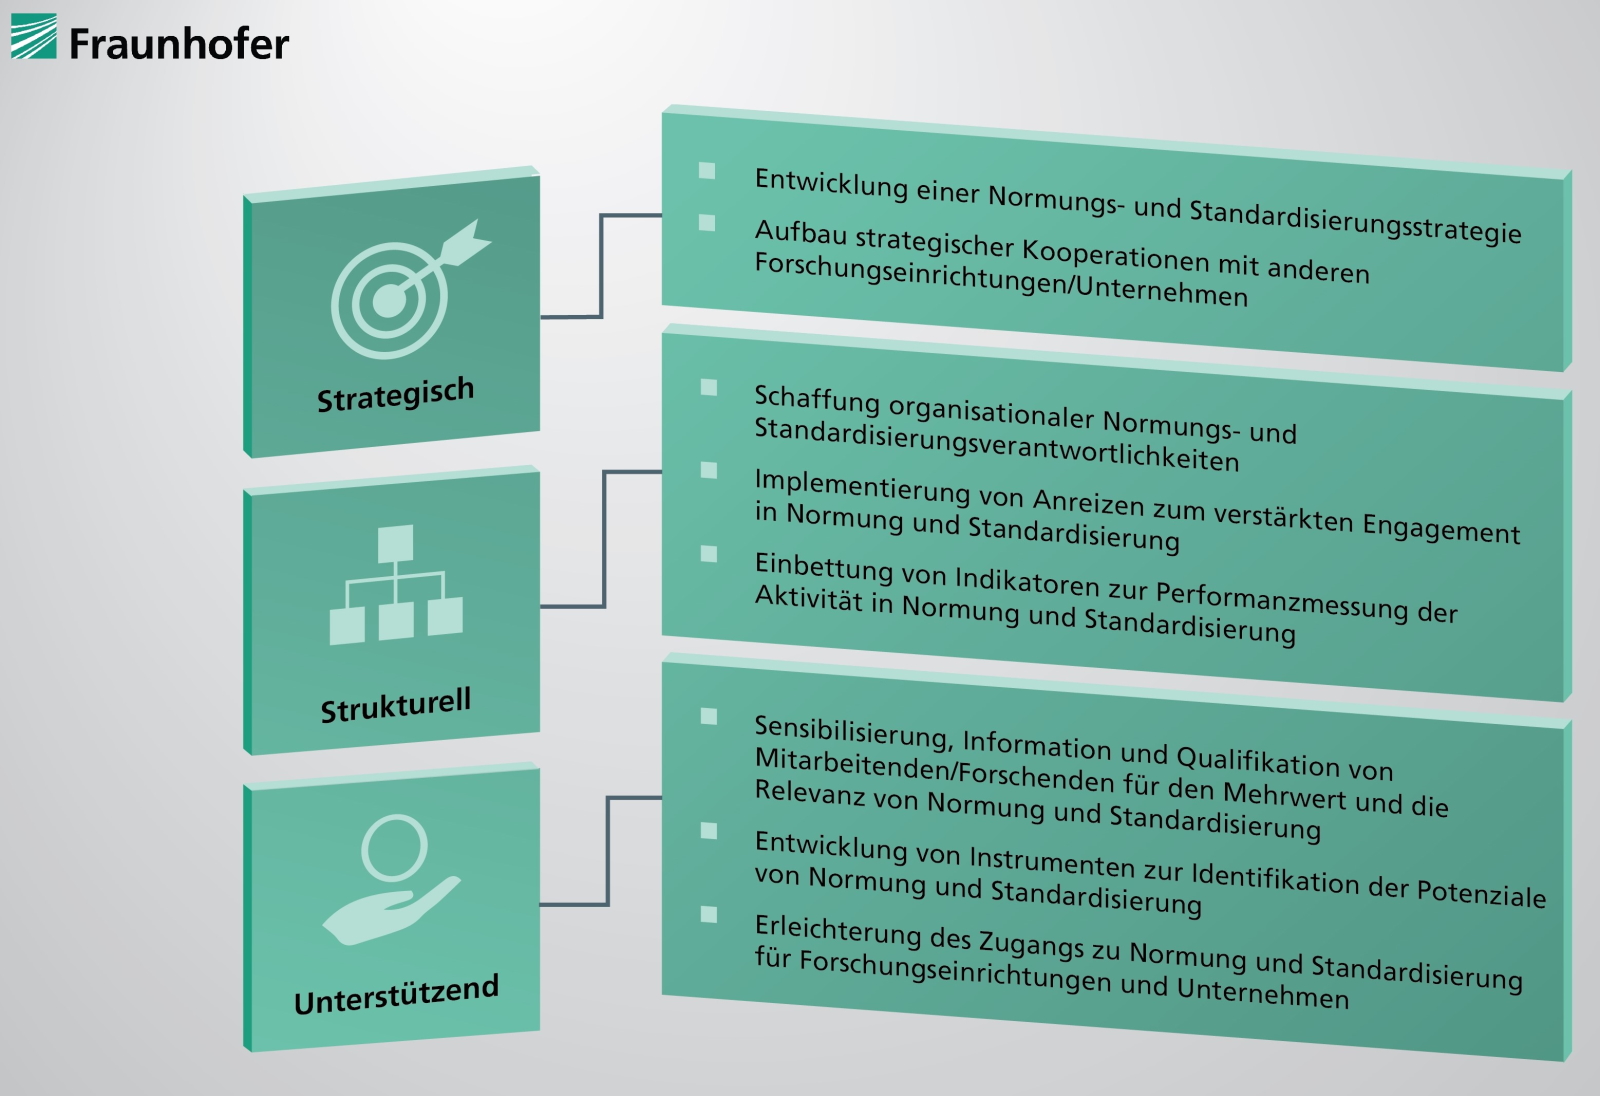 Die Grafik gibt einen Überblick über die Handlungsempfehlungen der Fraunhofer-Normungsstudie. Nach der Festlegung einer grundlegenden Strategie sollten Unternehmen auch strukturelle und unterstützende Maßnahmen definieren.